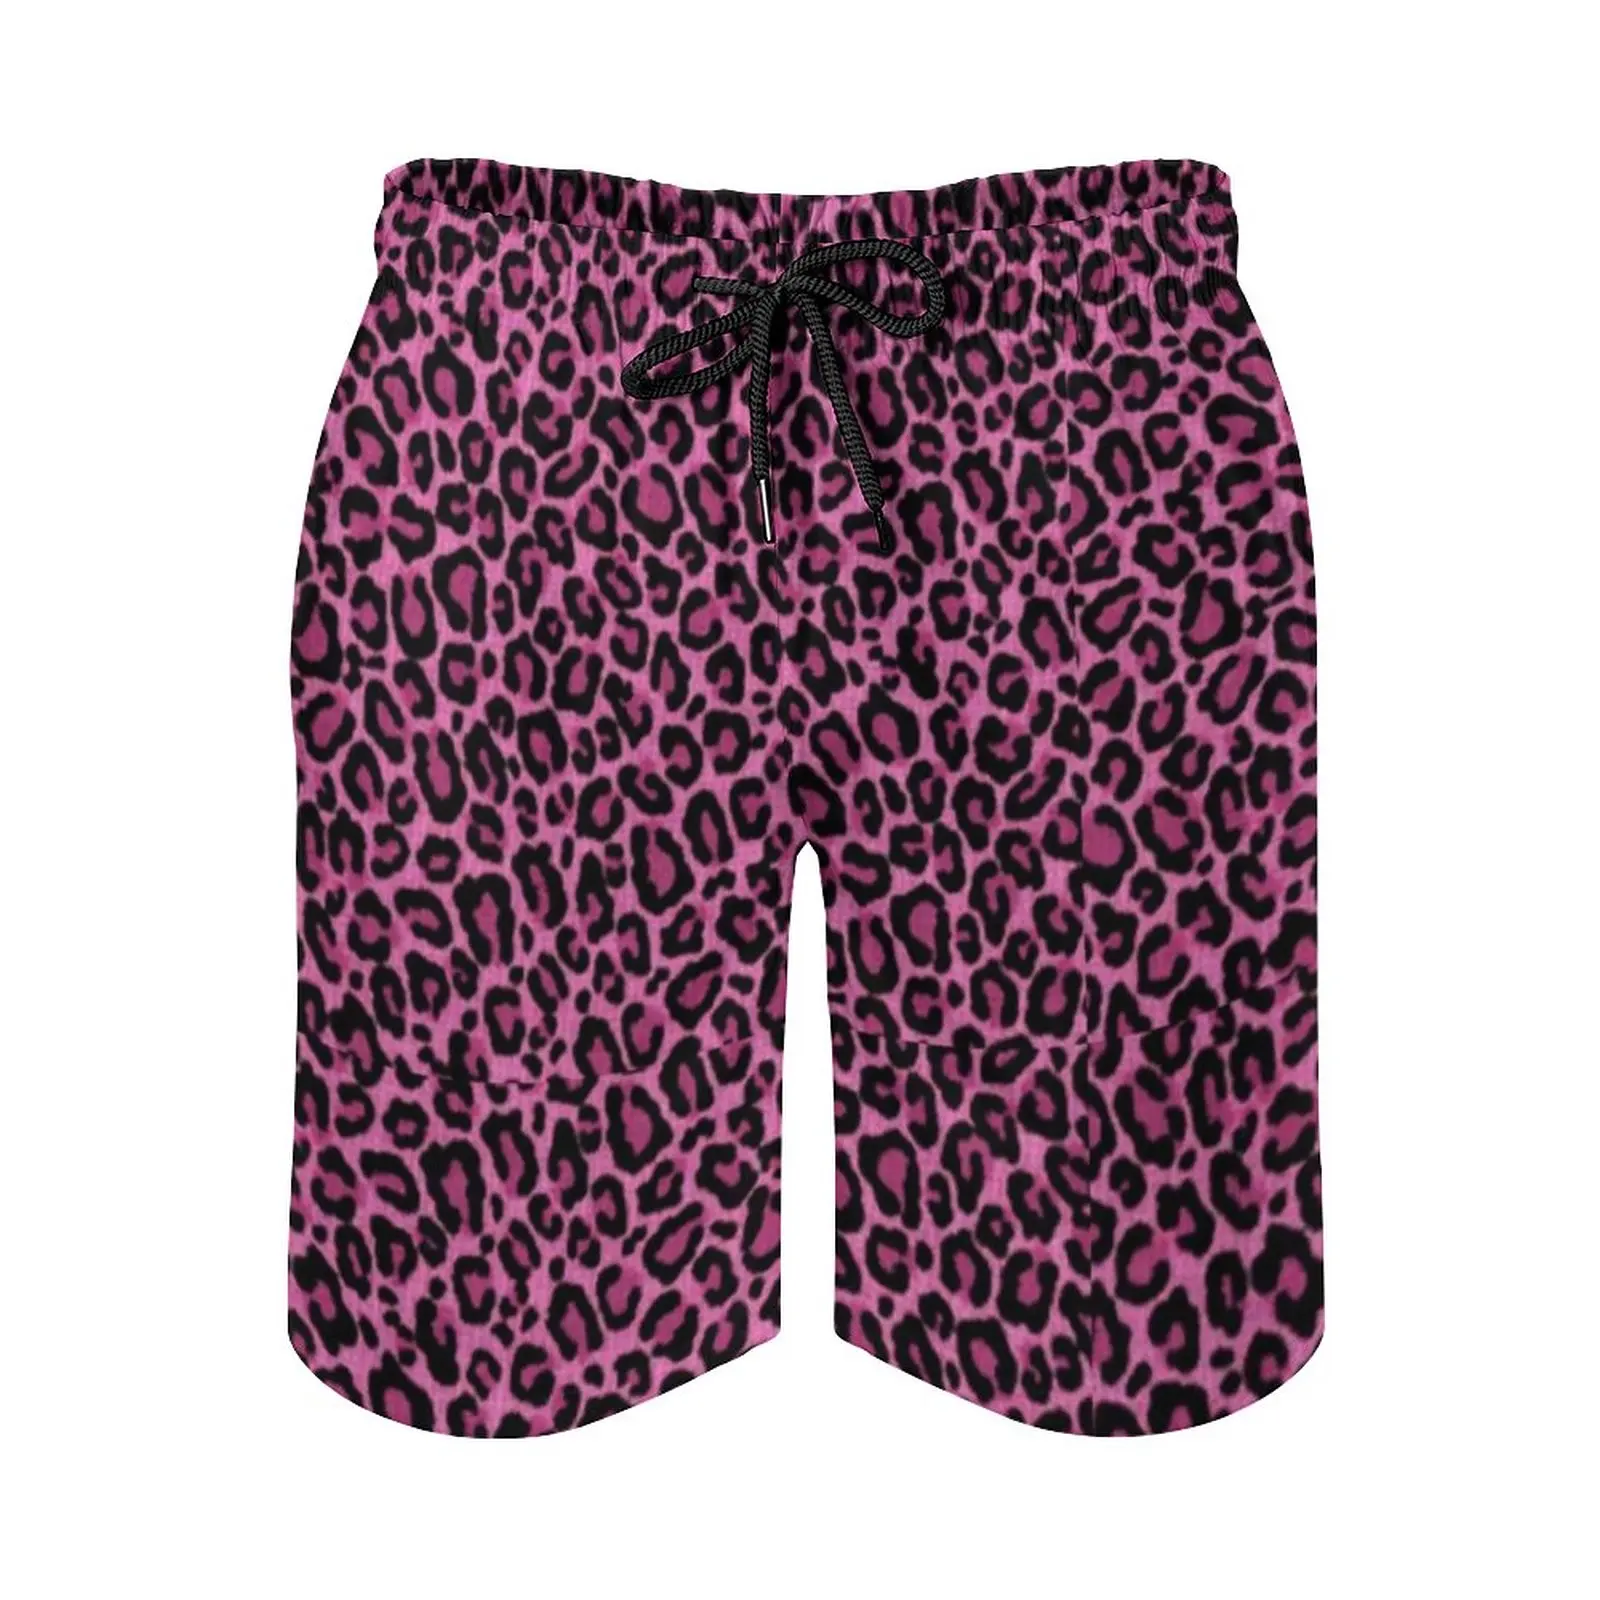 Funky leopard print board shorts de alta qualidade rosa preto manchas  impressão placa calças curtas homem cintura elástica troncos natação